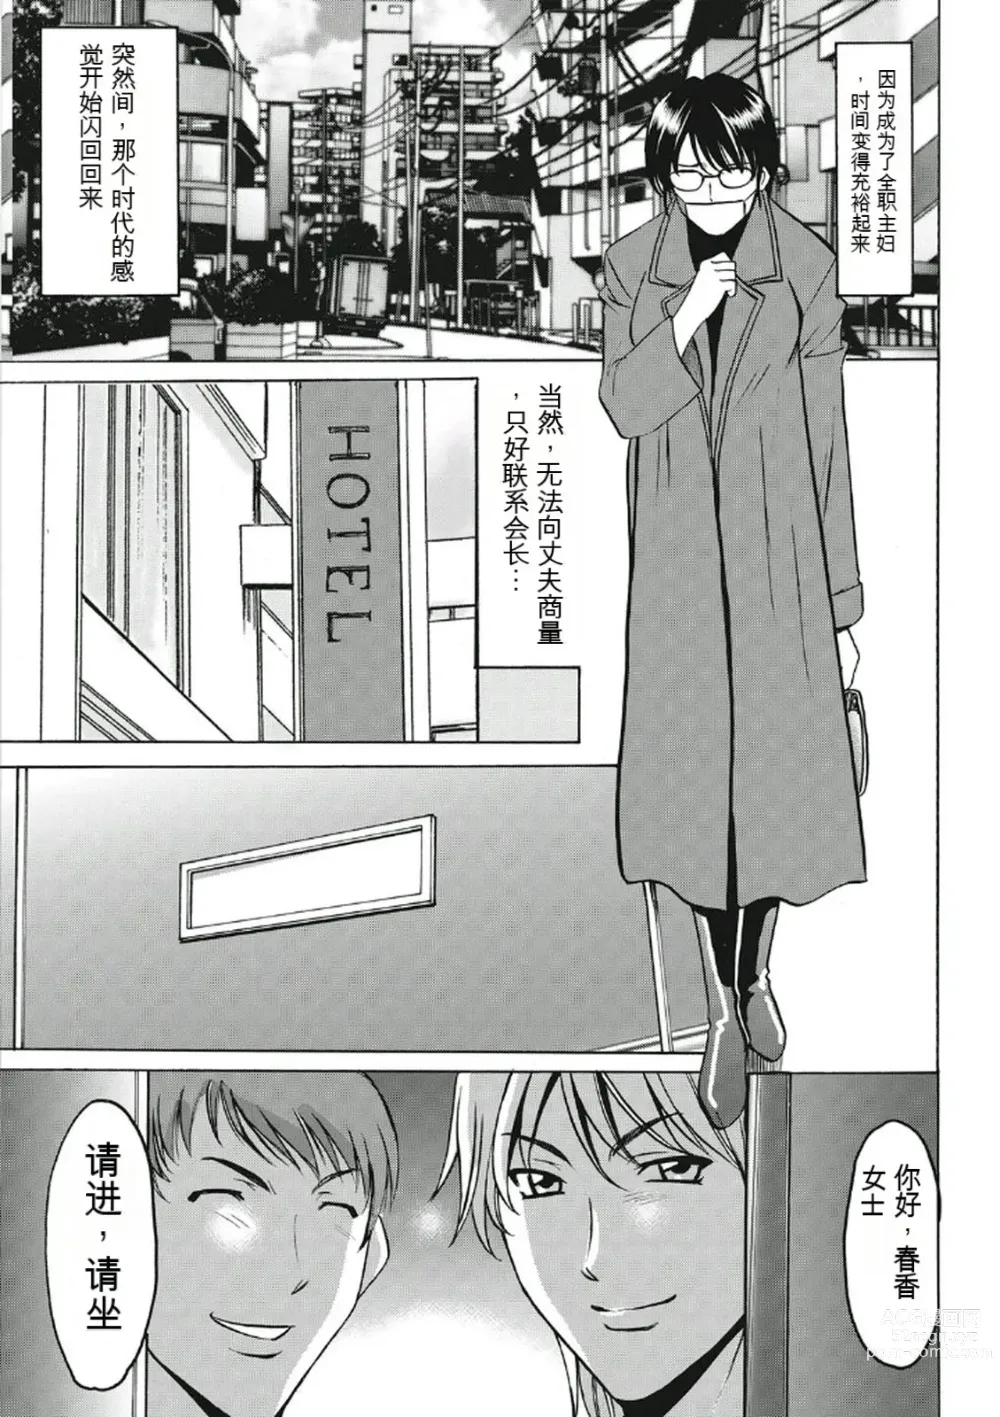 Page 197 of manga Chijoku Byoutou -Hakui no Datenshi-